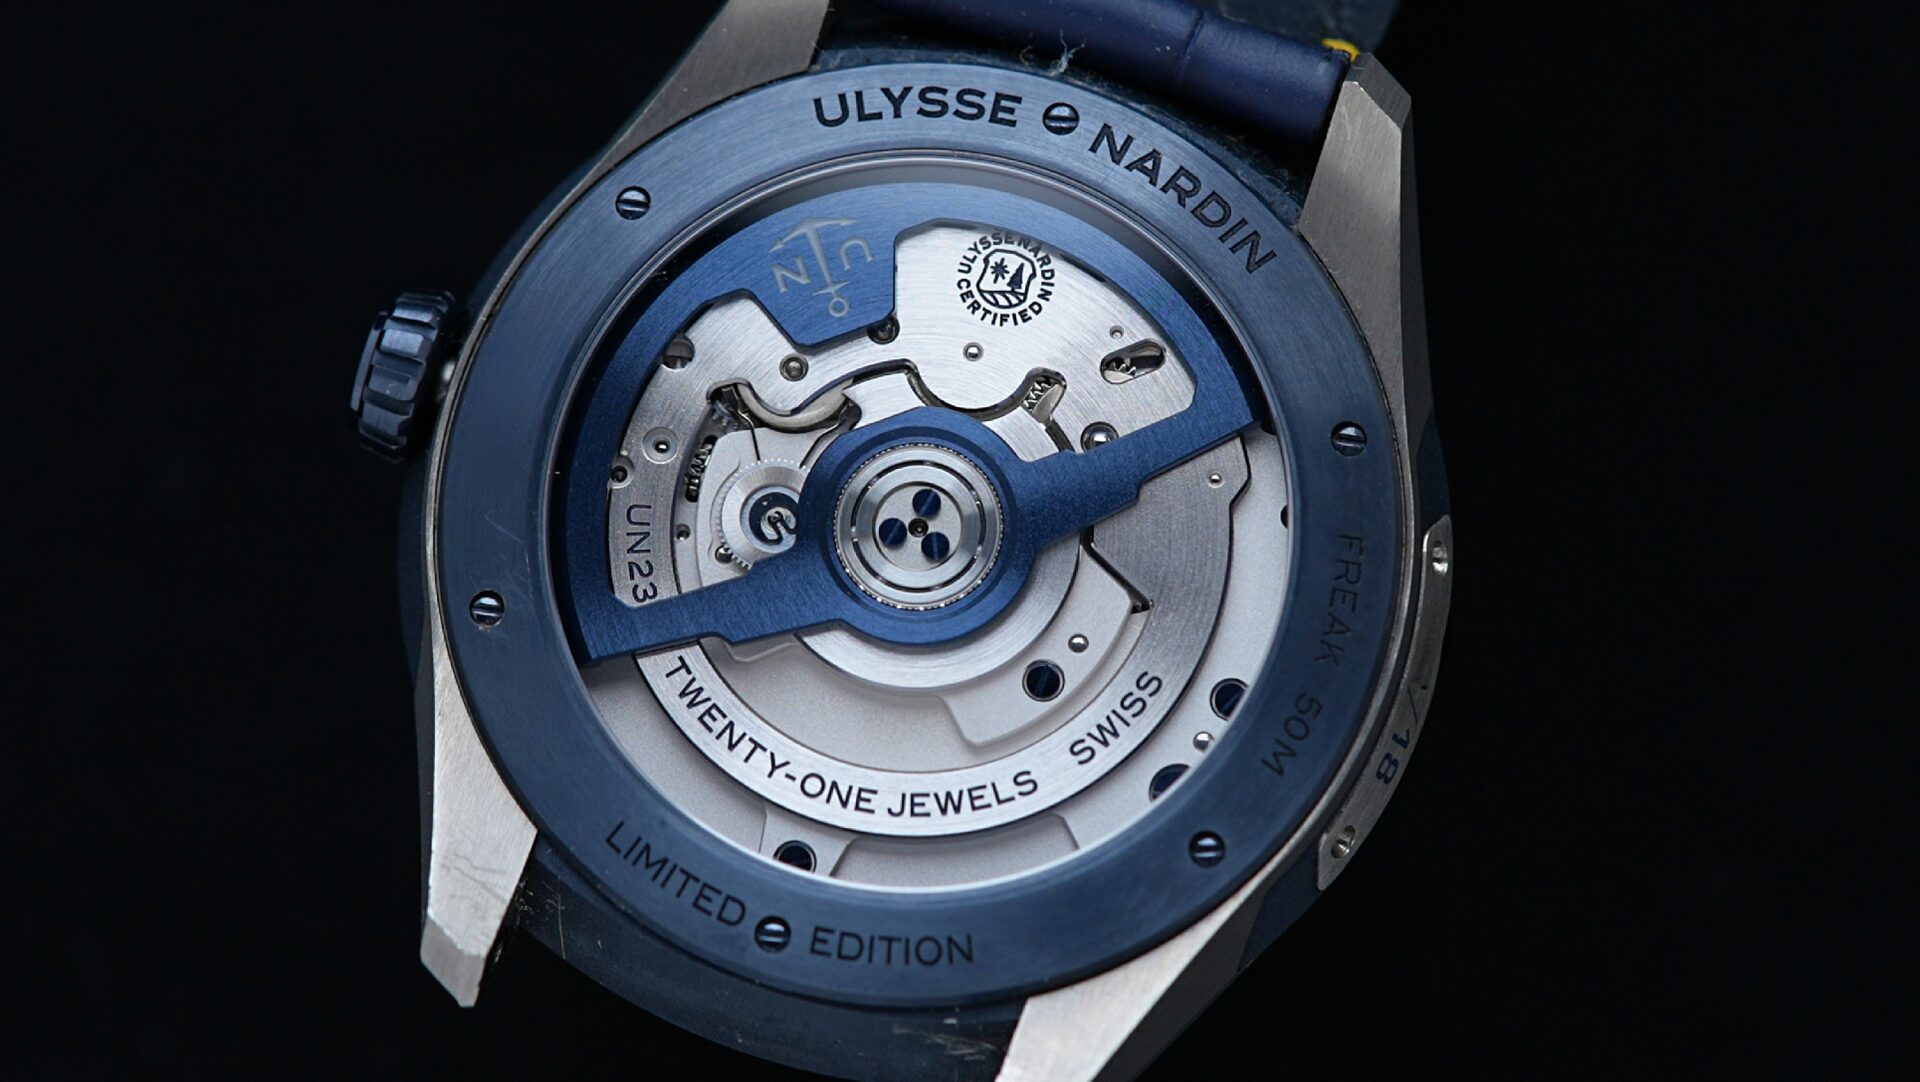 Open caseback of the Ulysse Nardin Freak X Marquetry watch.